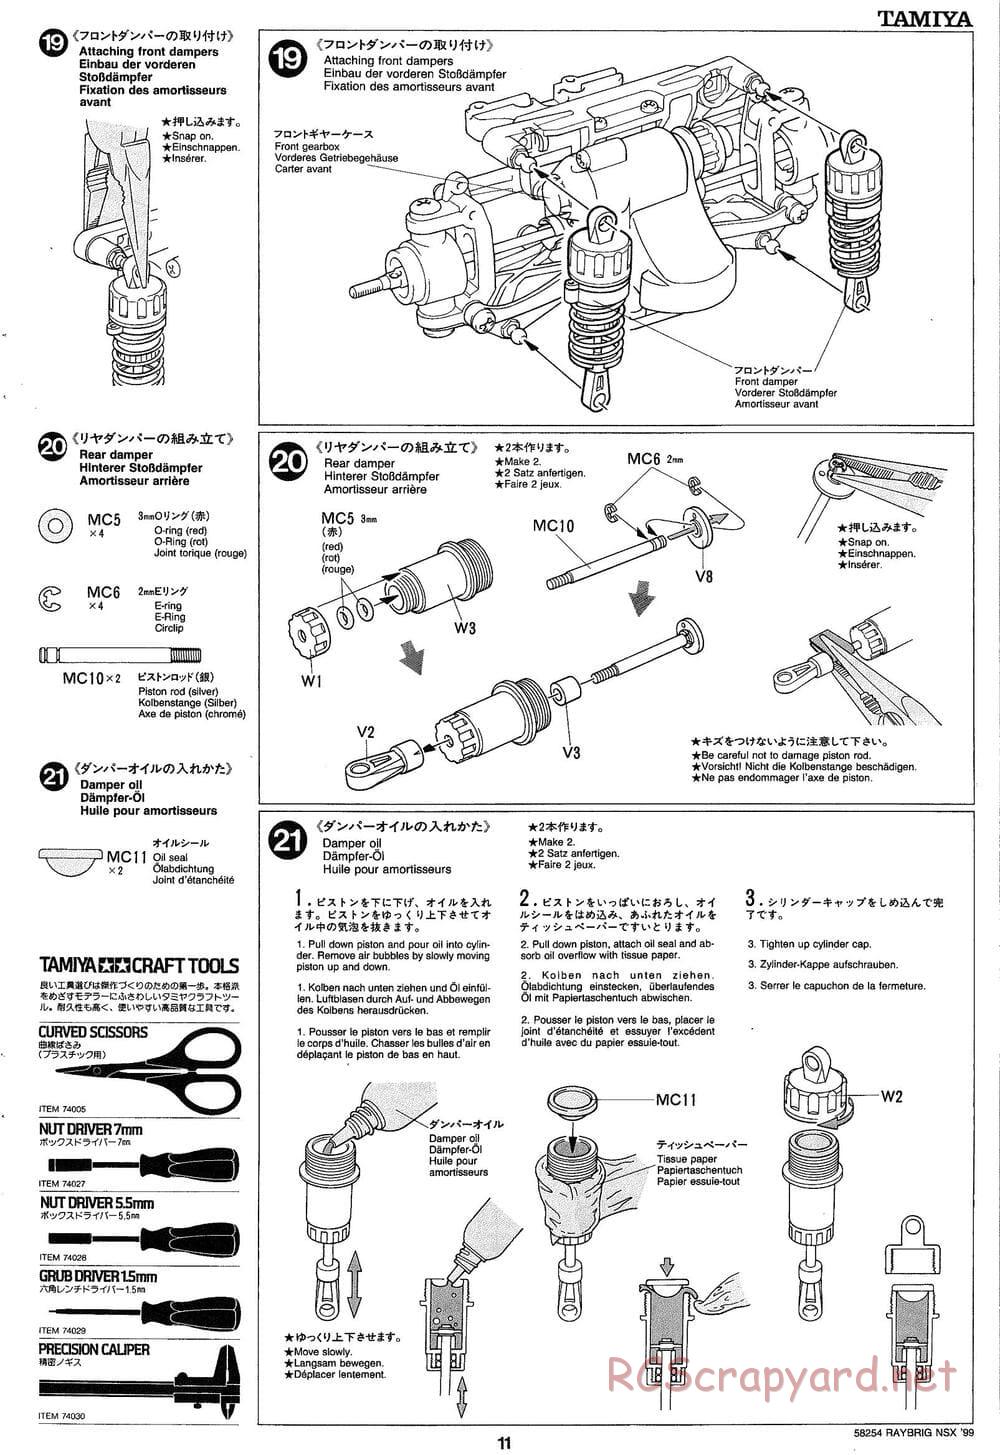 Tamiya - Raybrig NSX 99 - TA-03R Chassis - Manual - Page 11